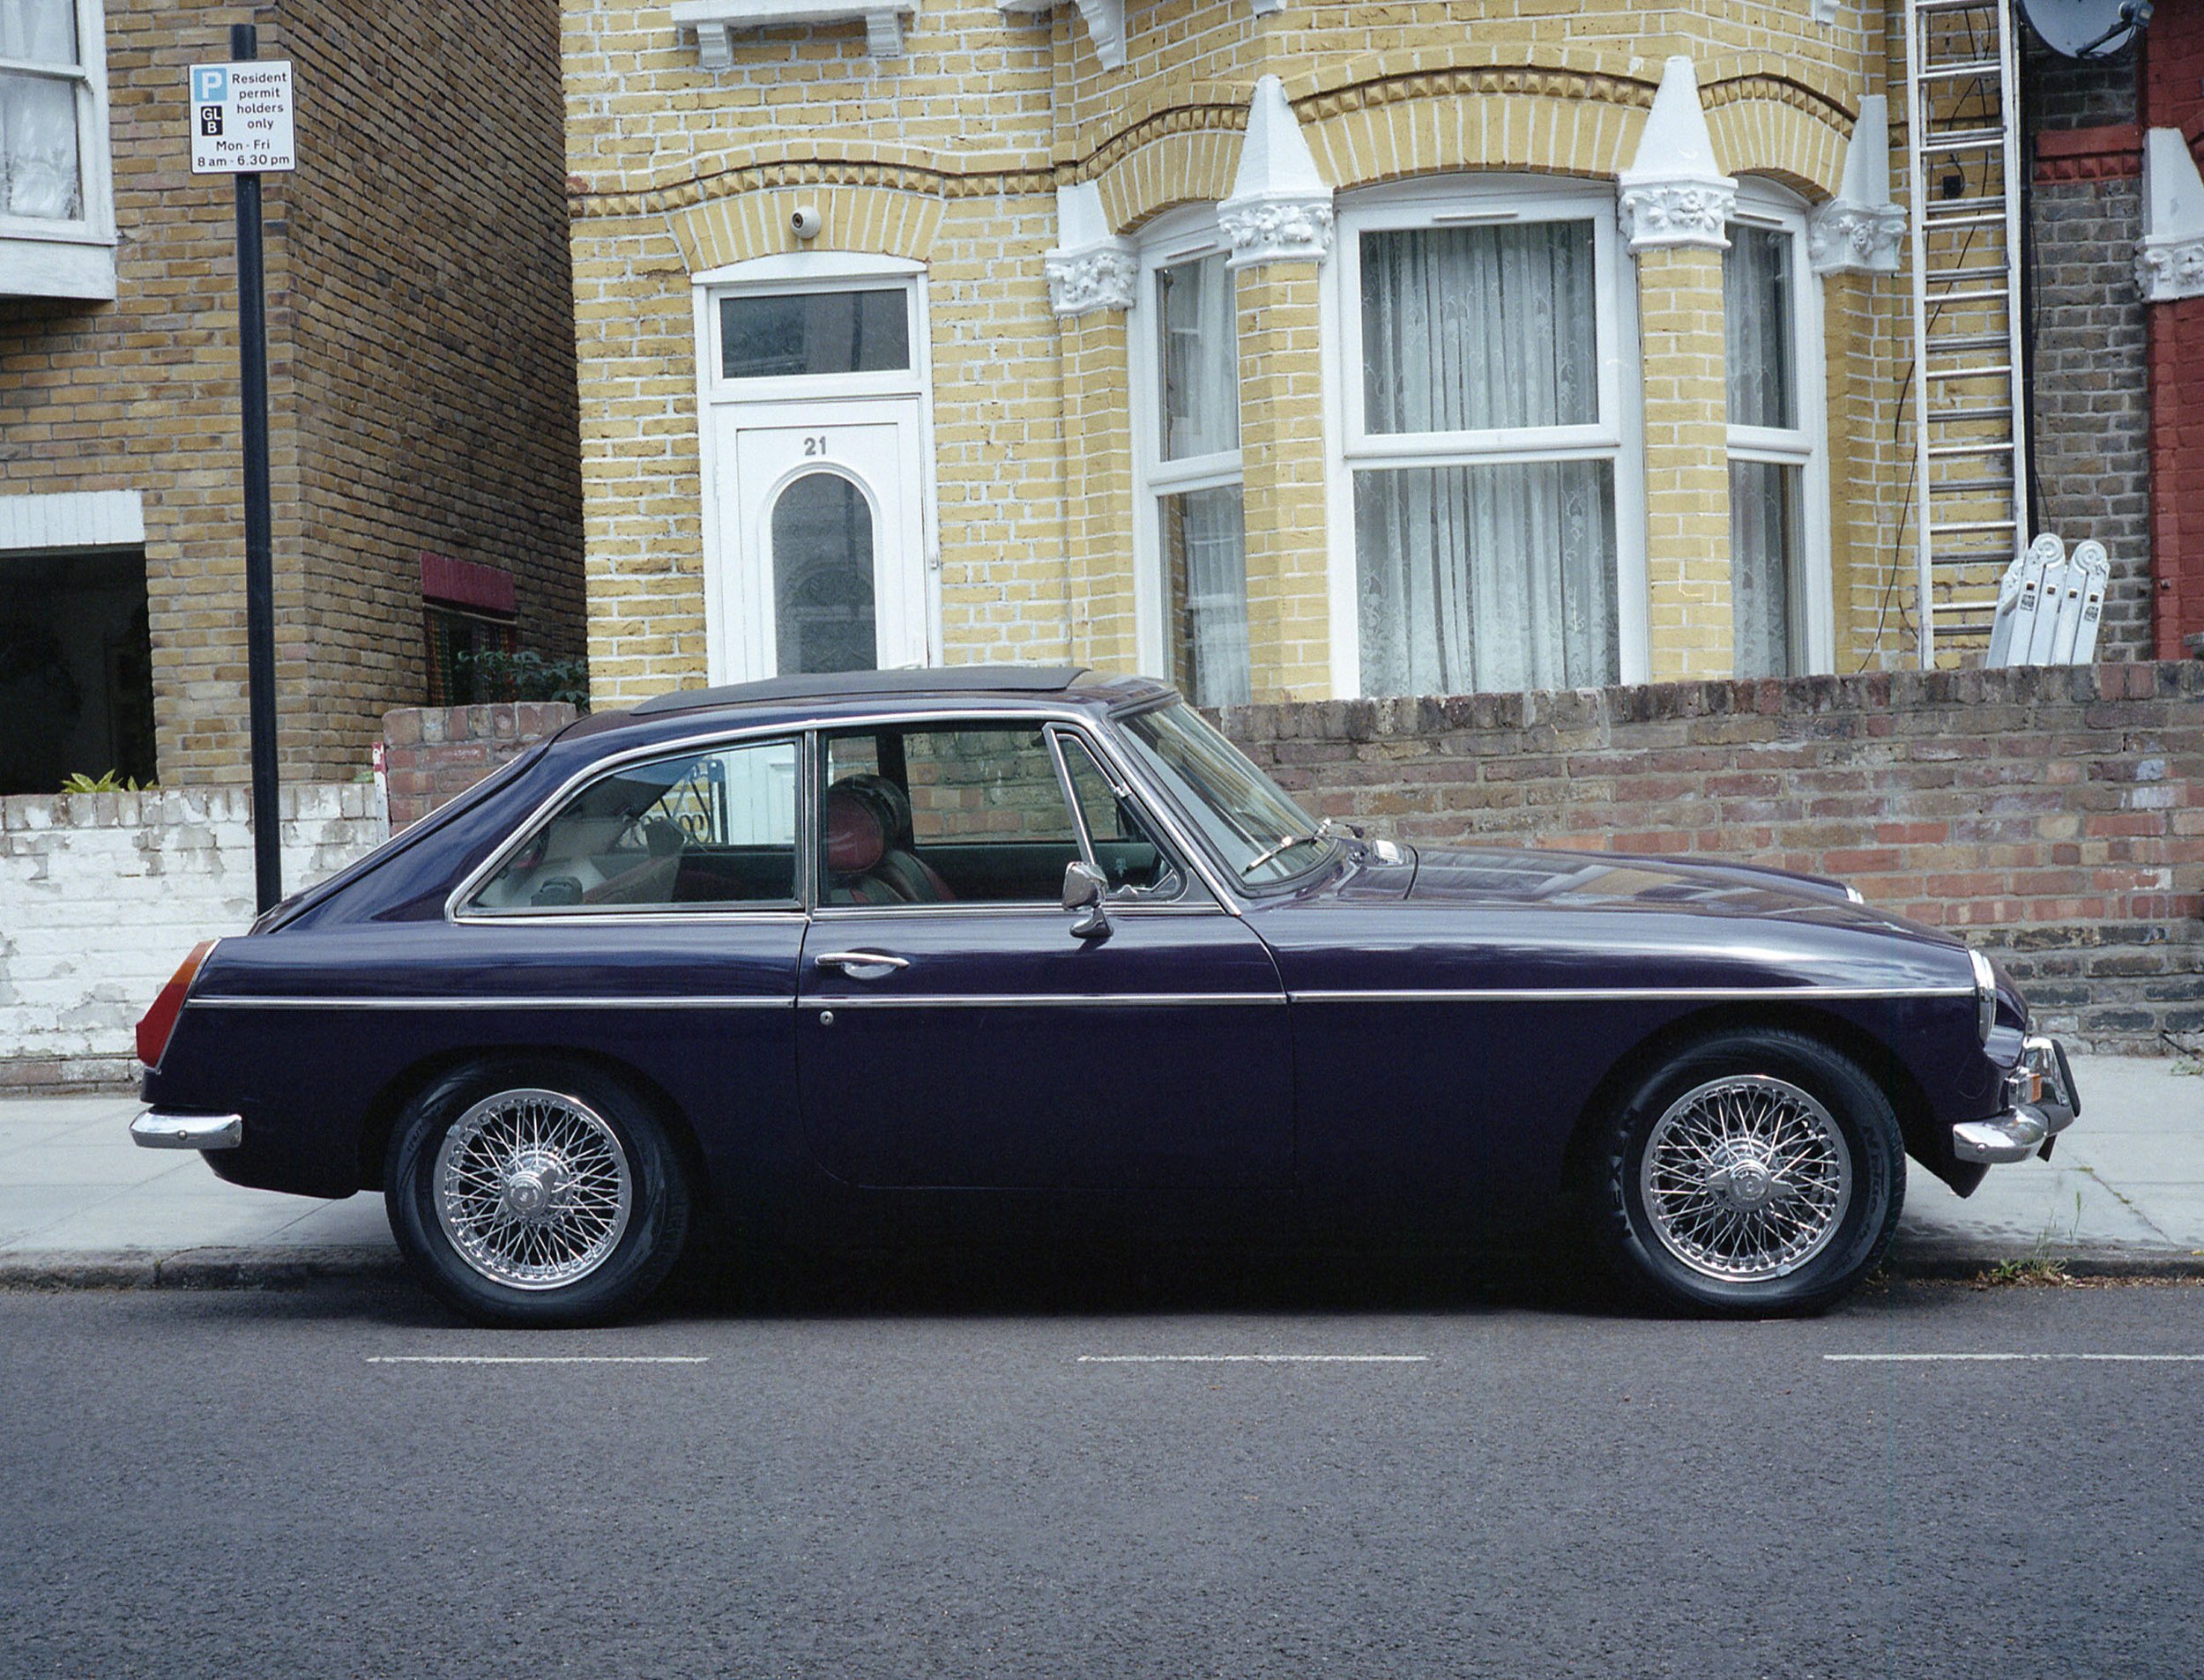  Purple MG in London - UK 